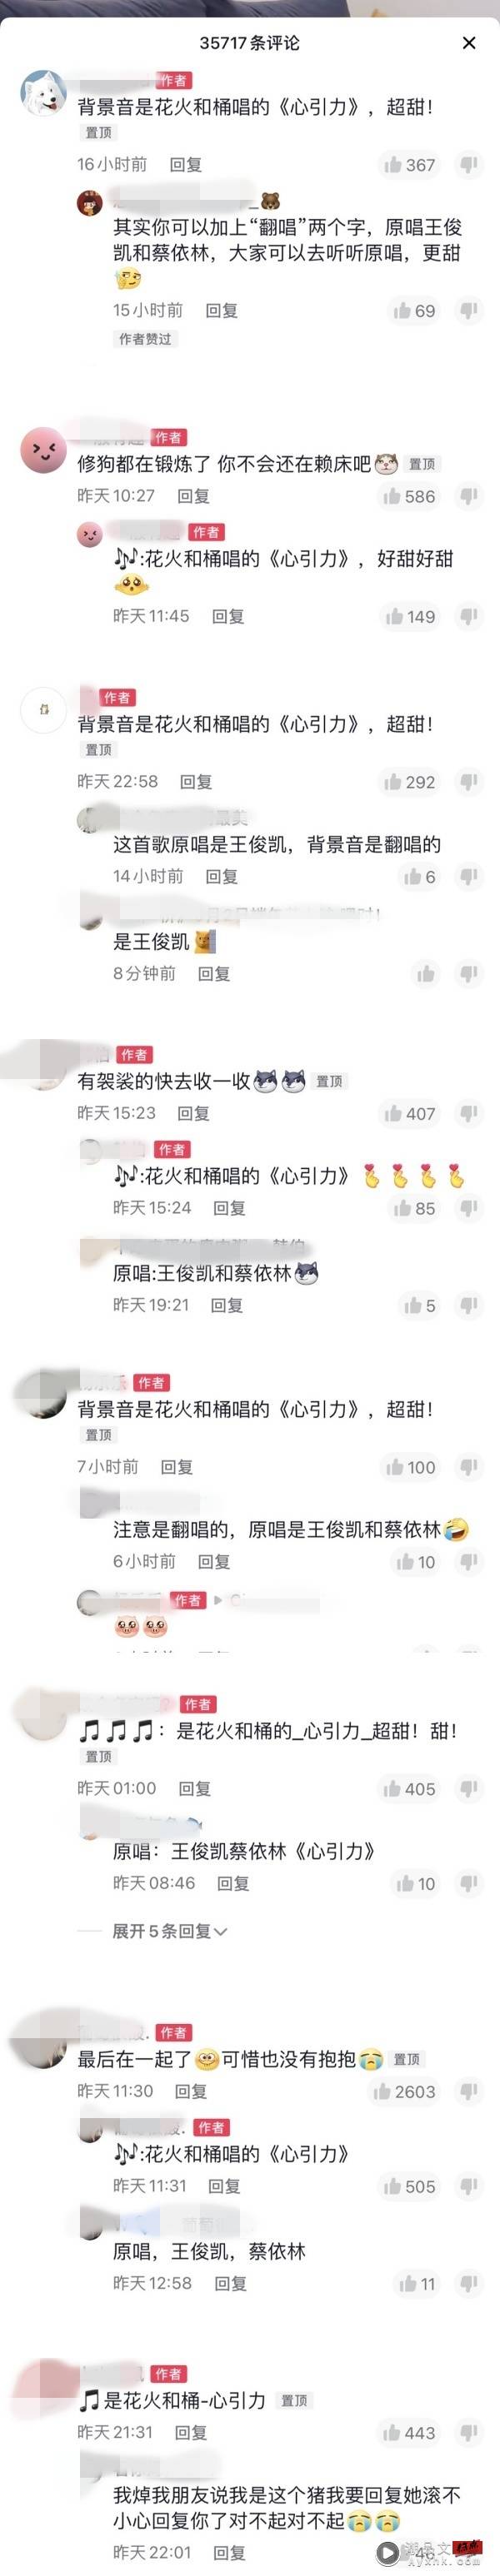 王俊凯、蔡依林《心引力》版权疑被卖！宣传原唱没有姓名 娱乐资讯 图1张